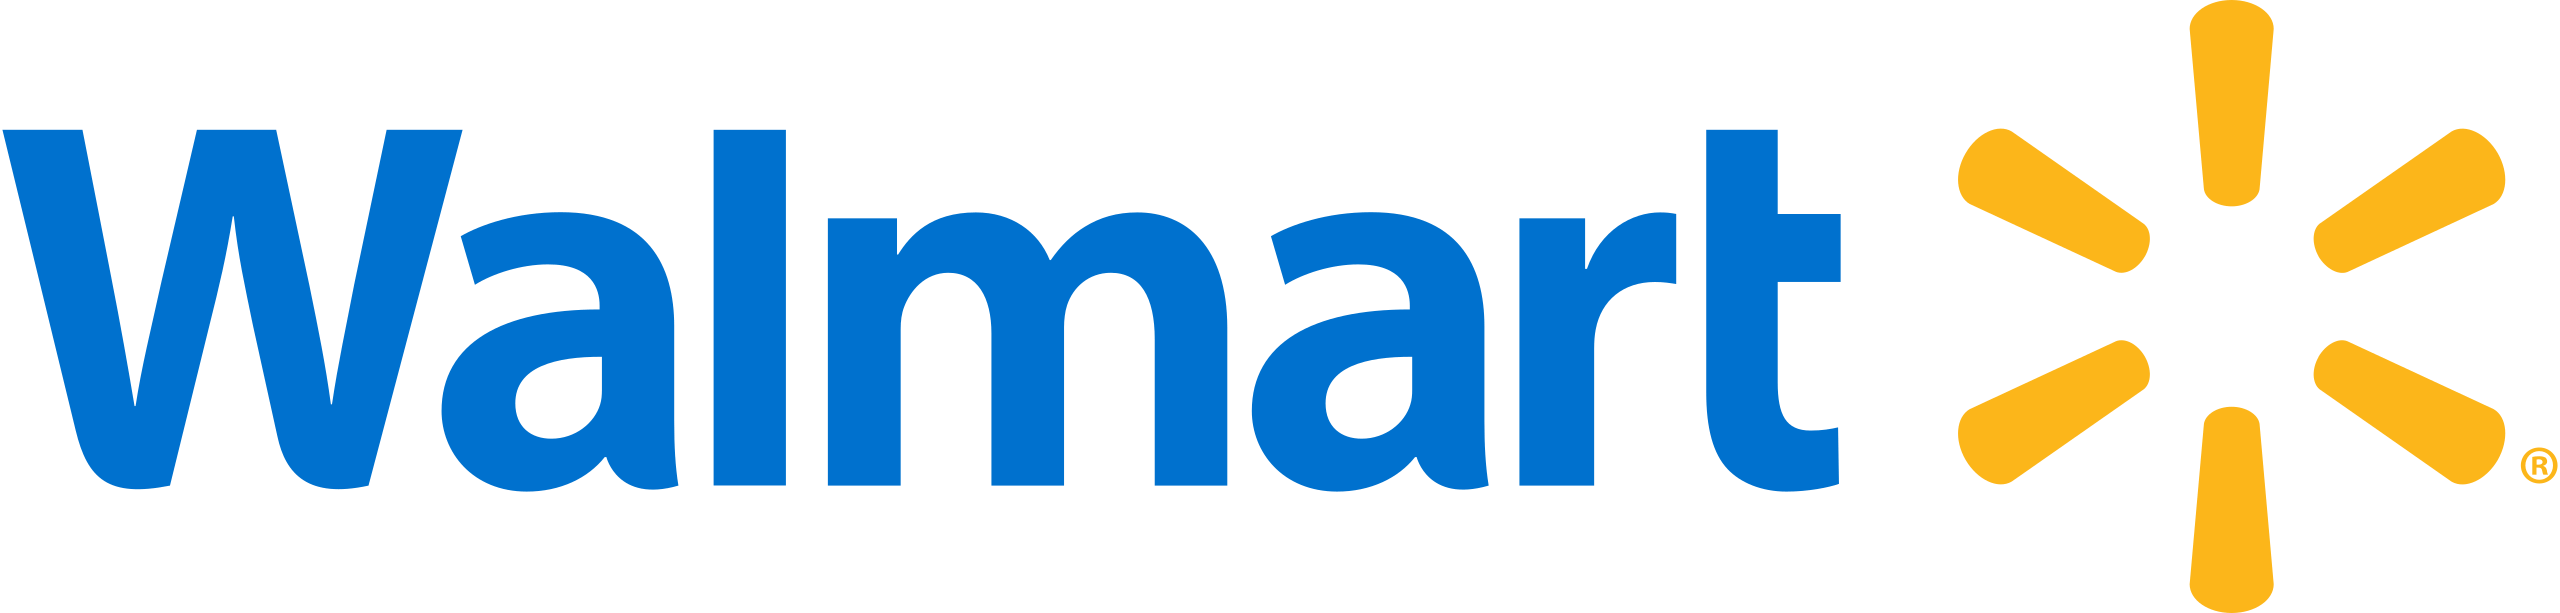 Walmart logo - HPA